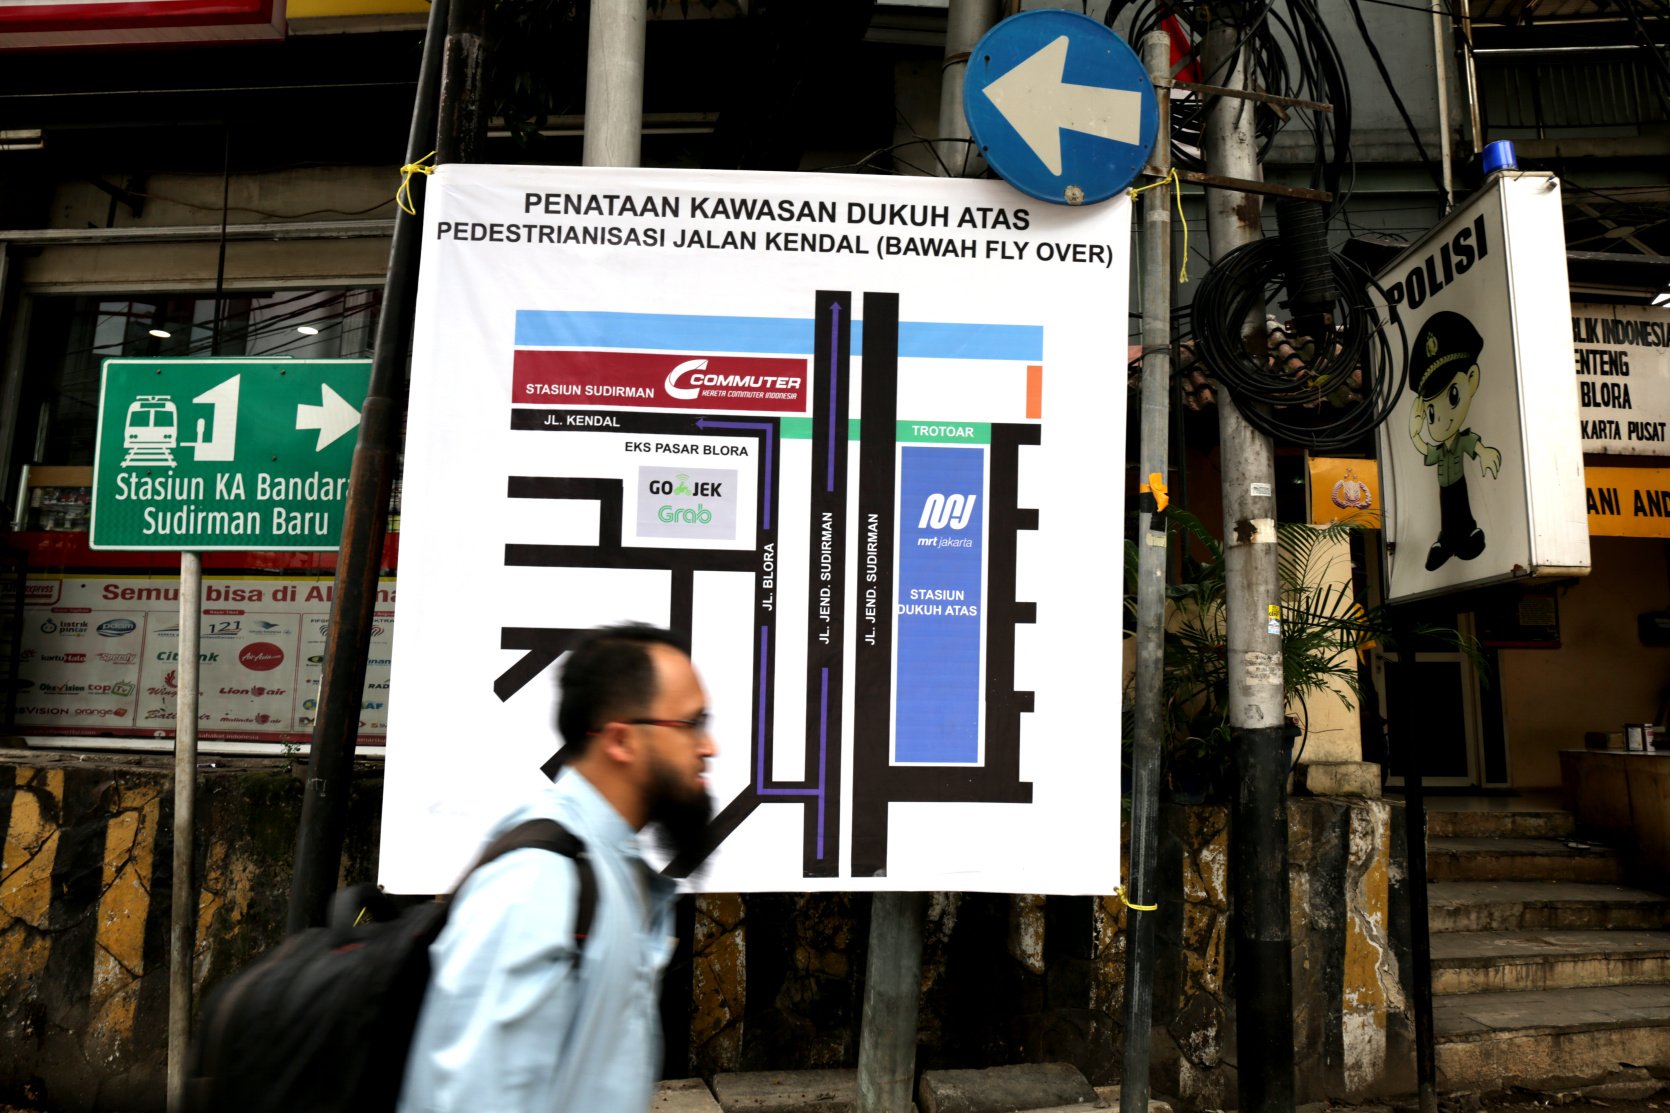 Moda raya terpadu (Mass Rapid Transit/MRT) Jakarta resmi memulai operasional terbatas dalam rangka uji coba publik pada hari ini, Selasa (12/3). Pada operasi hari ini, MRT Jakarta akan mengangkut sebanyak 4 ribu penumpang mulai pukul 08.00 sampai 16.00 WIB.